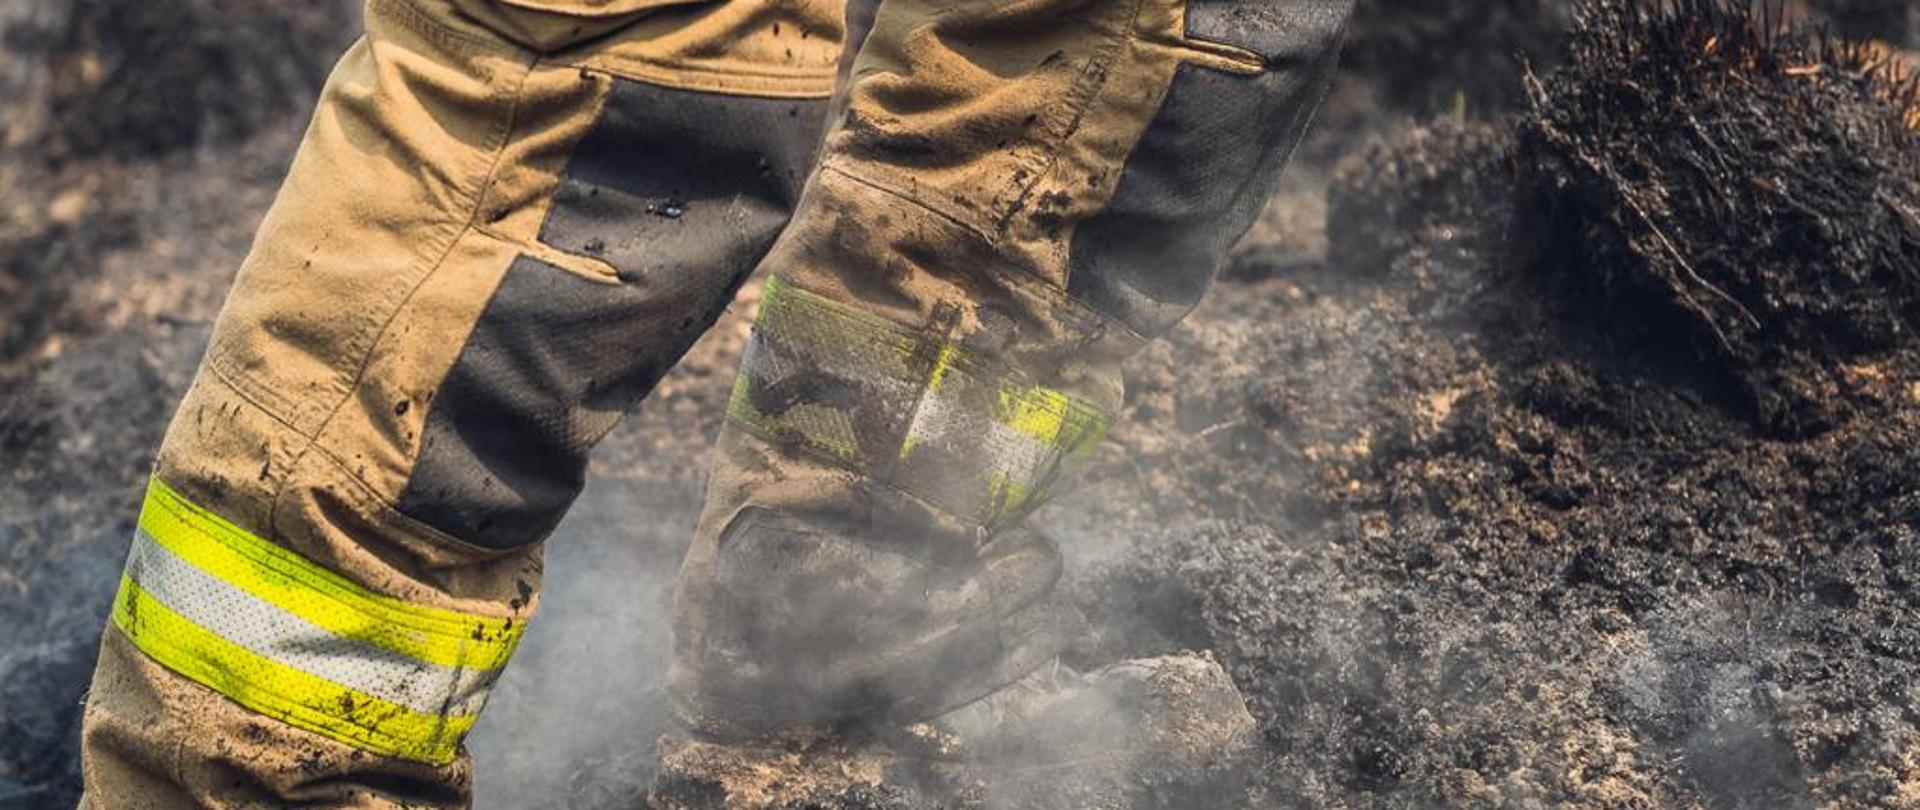 Na terenie wypalonym widoczne od kolan dwie nogi strażaka w spodniach specjalnych